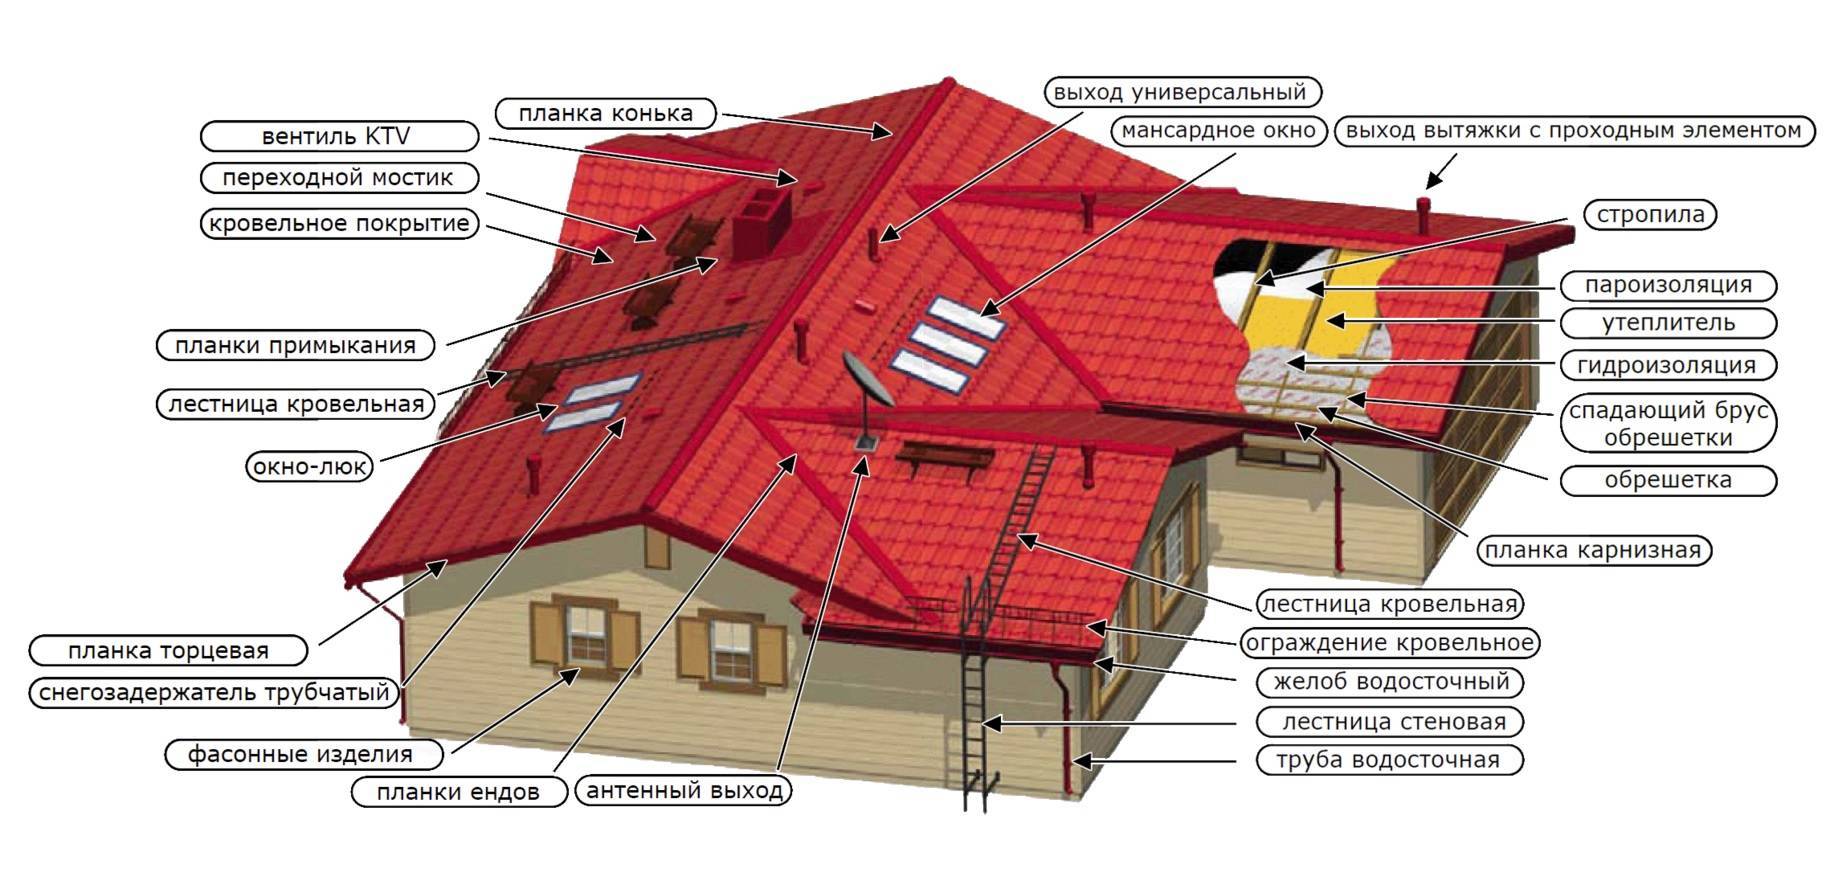 Конструкция и элементы крыши: названия и назначения.